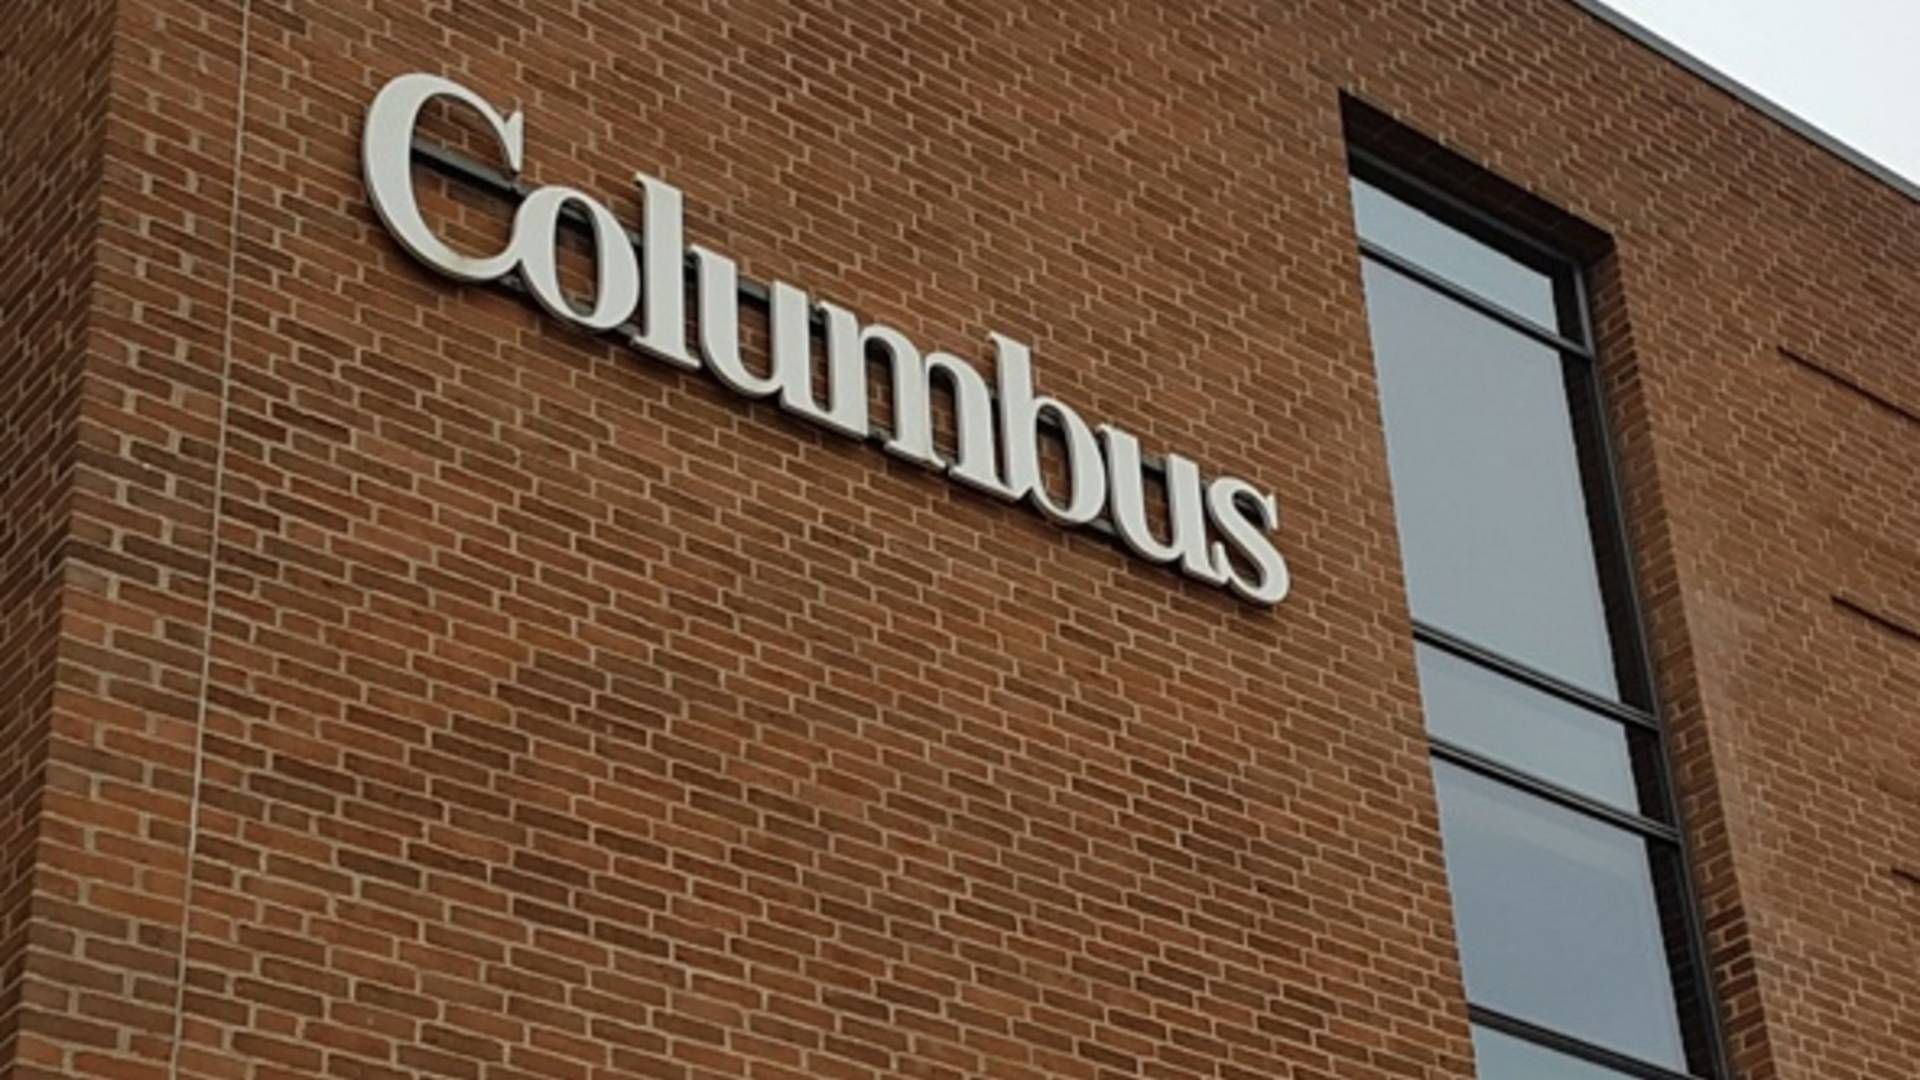 Columbus har fået coronakrisen at føle i form af et stort salgsdyk. | Foto: Jakob Skouboe Brandenhoff